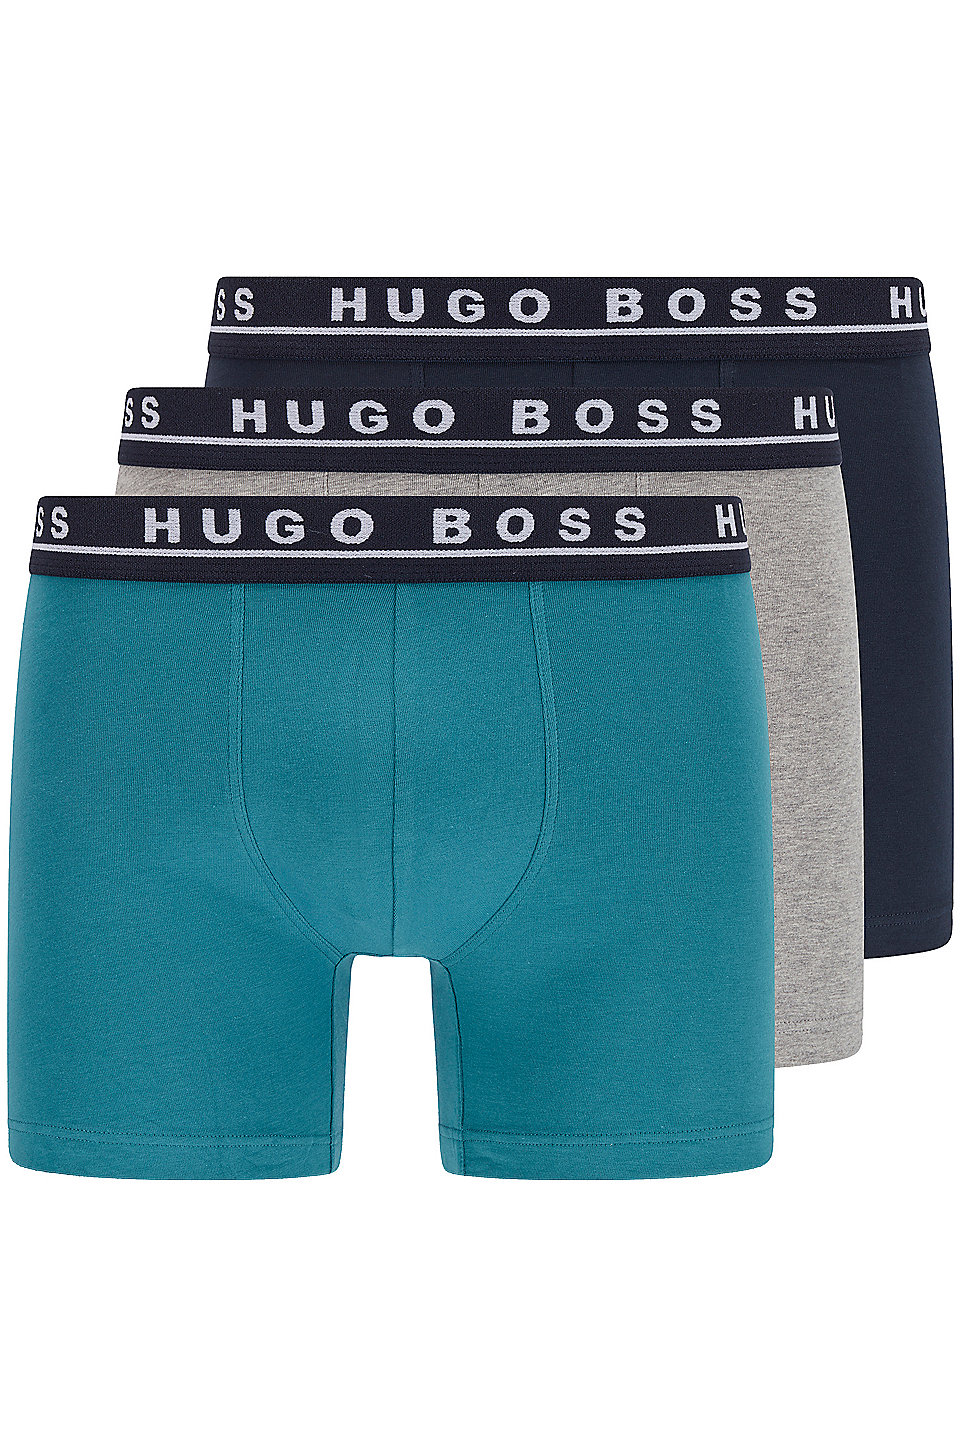 Boss-Hugo Boss Men's White Cotton Boxer Brief 3 Pack